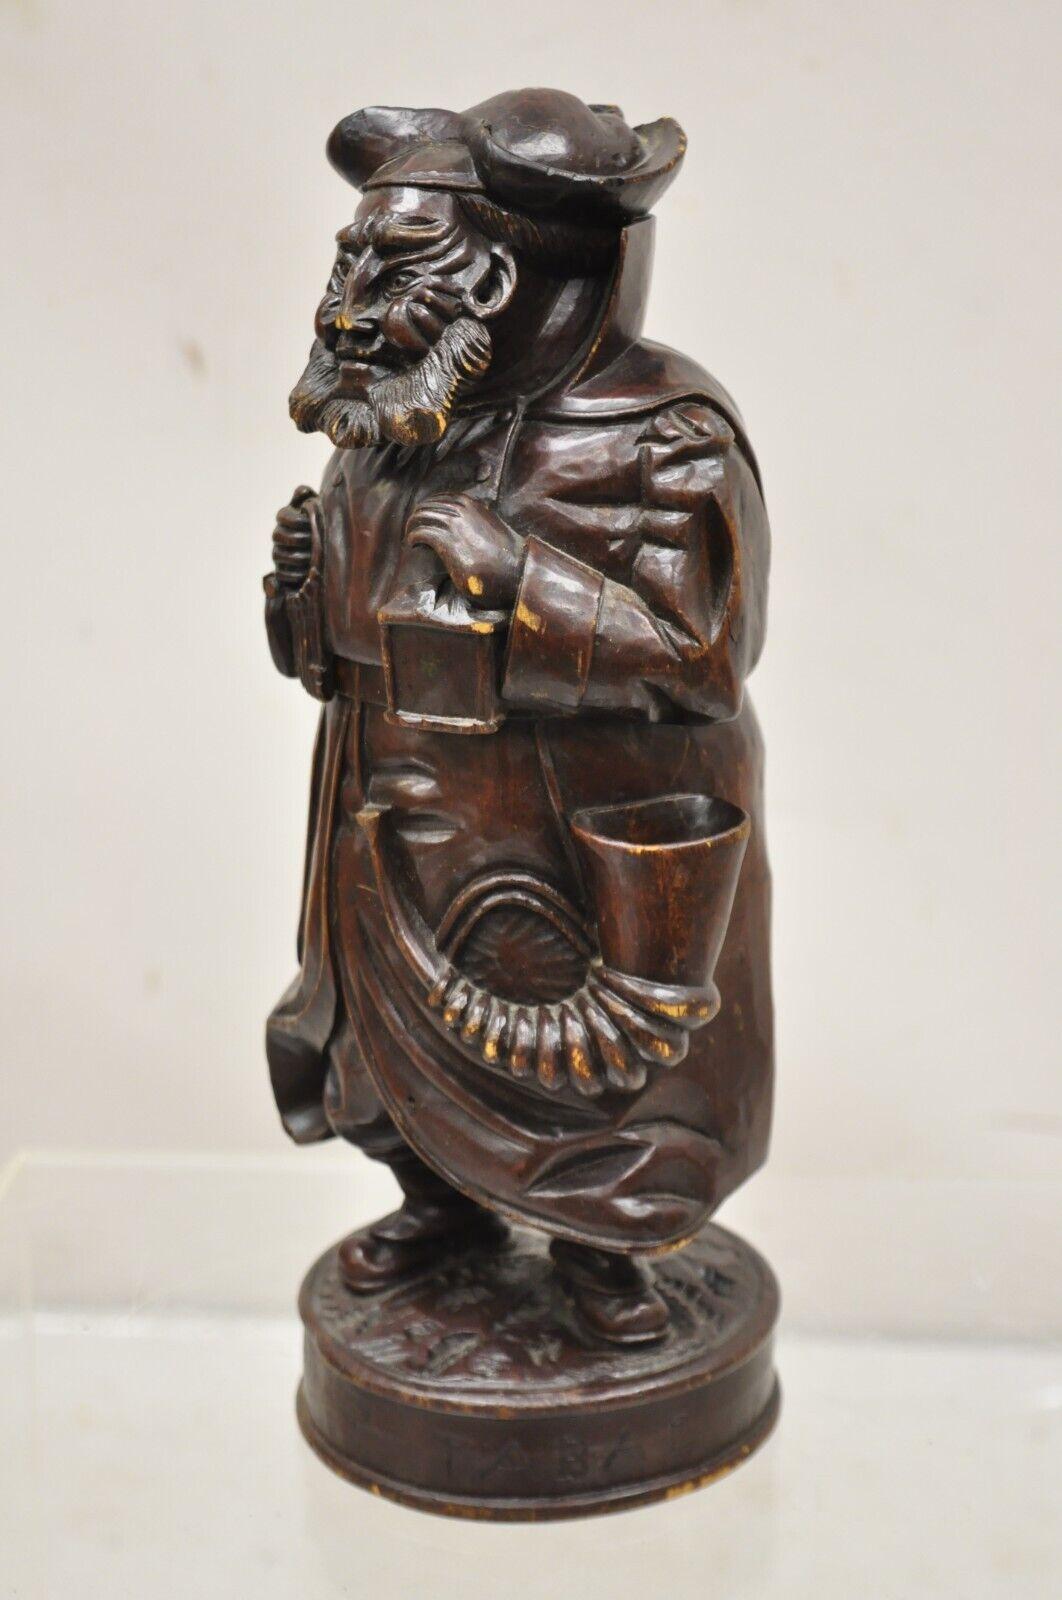 Ancienne boîte à tabac à couvercle en bois sculpté du Veilleur de Nuit, A.C.I., 19ème siècle, avec métal en étain amovible. Liner. On pense qu'il date du 19e siècle. Dimensions : 14